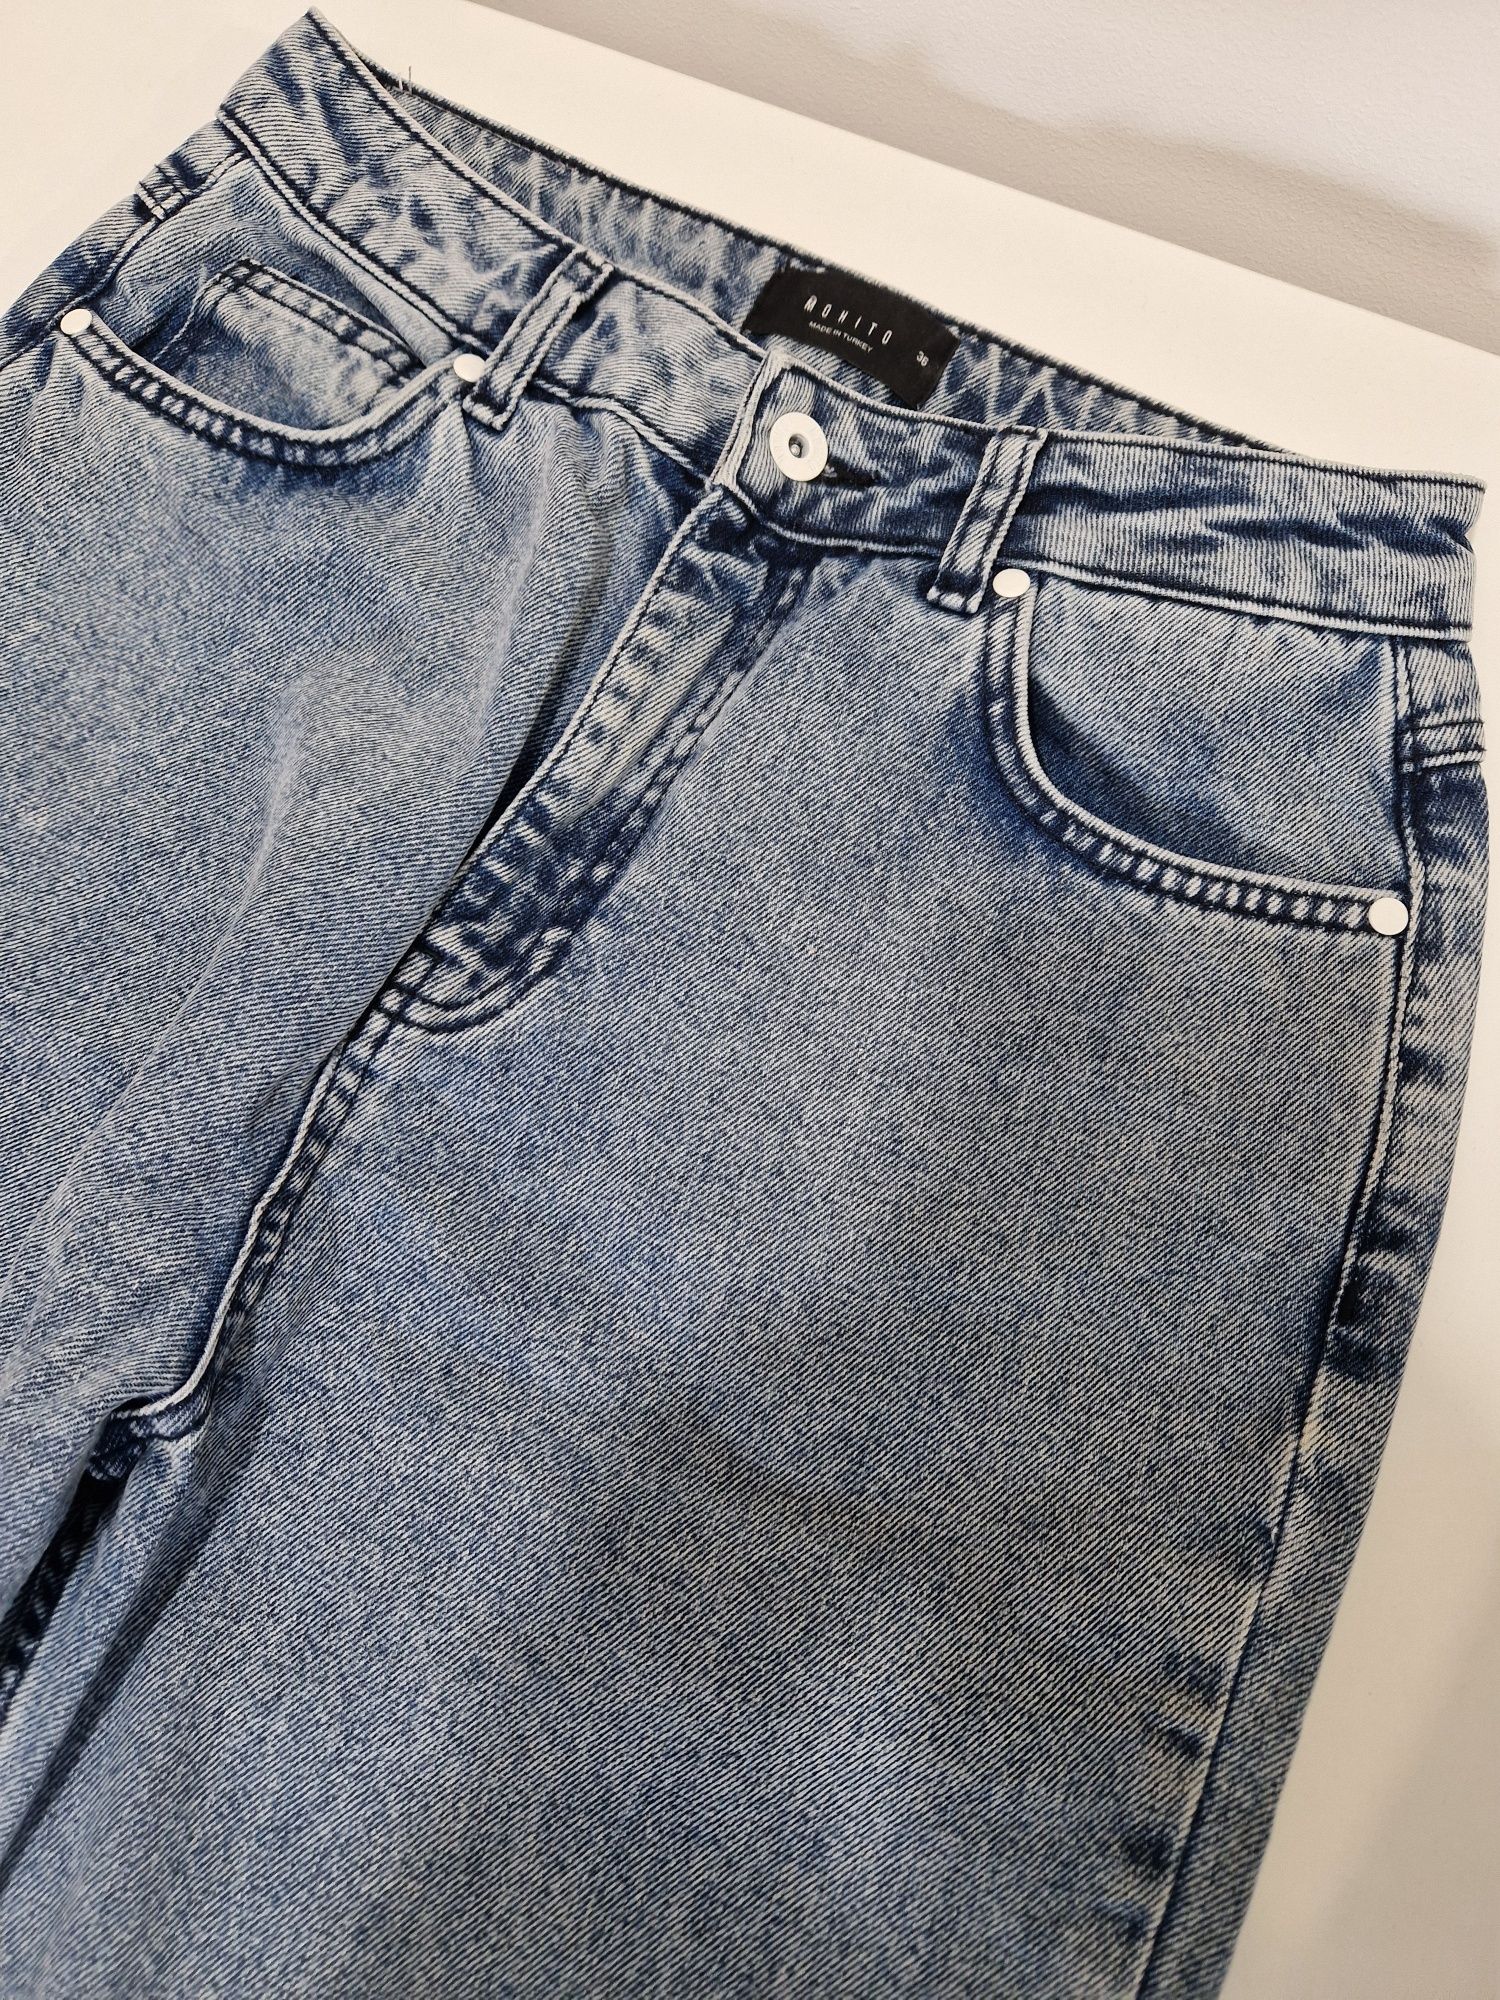 Spodnie jeansowe firmy Mohito rozm. 36